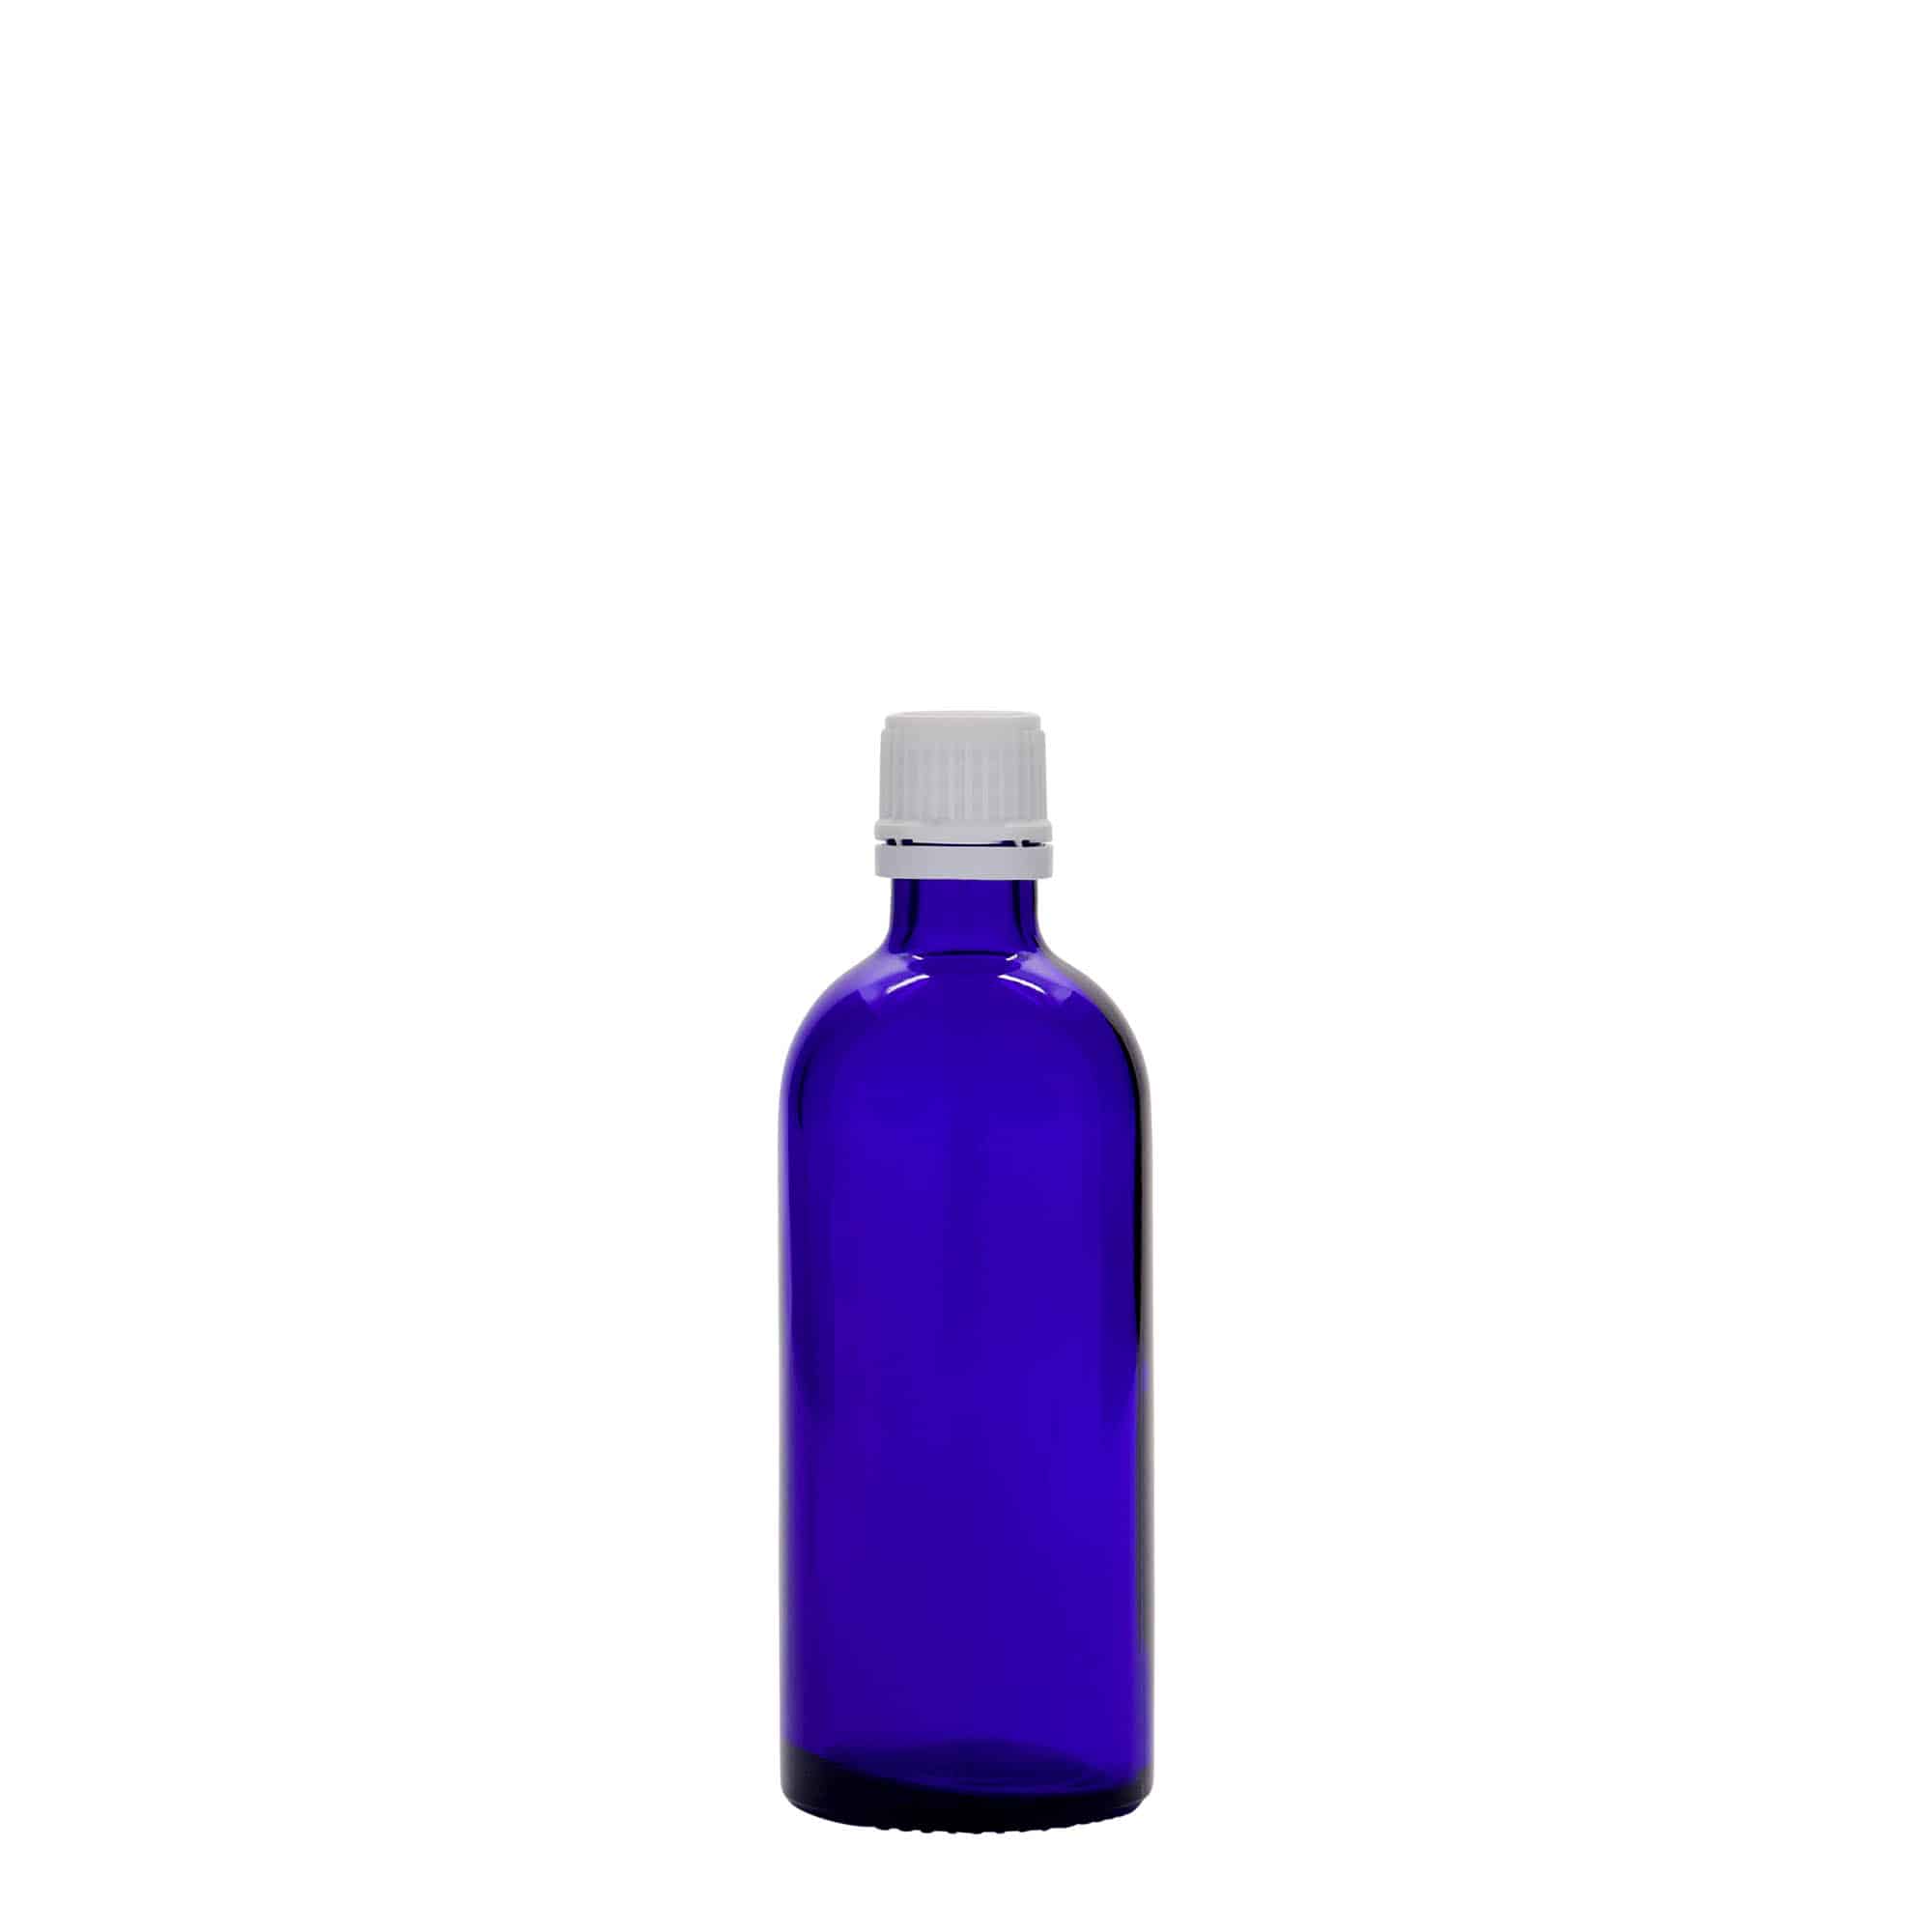 100 ml butelka farmaceutyczna, szkło, kolor błękit królewski, zamknięcie: DIN 18